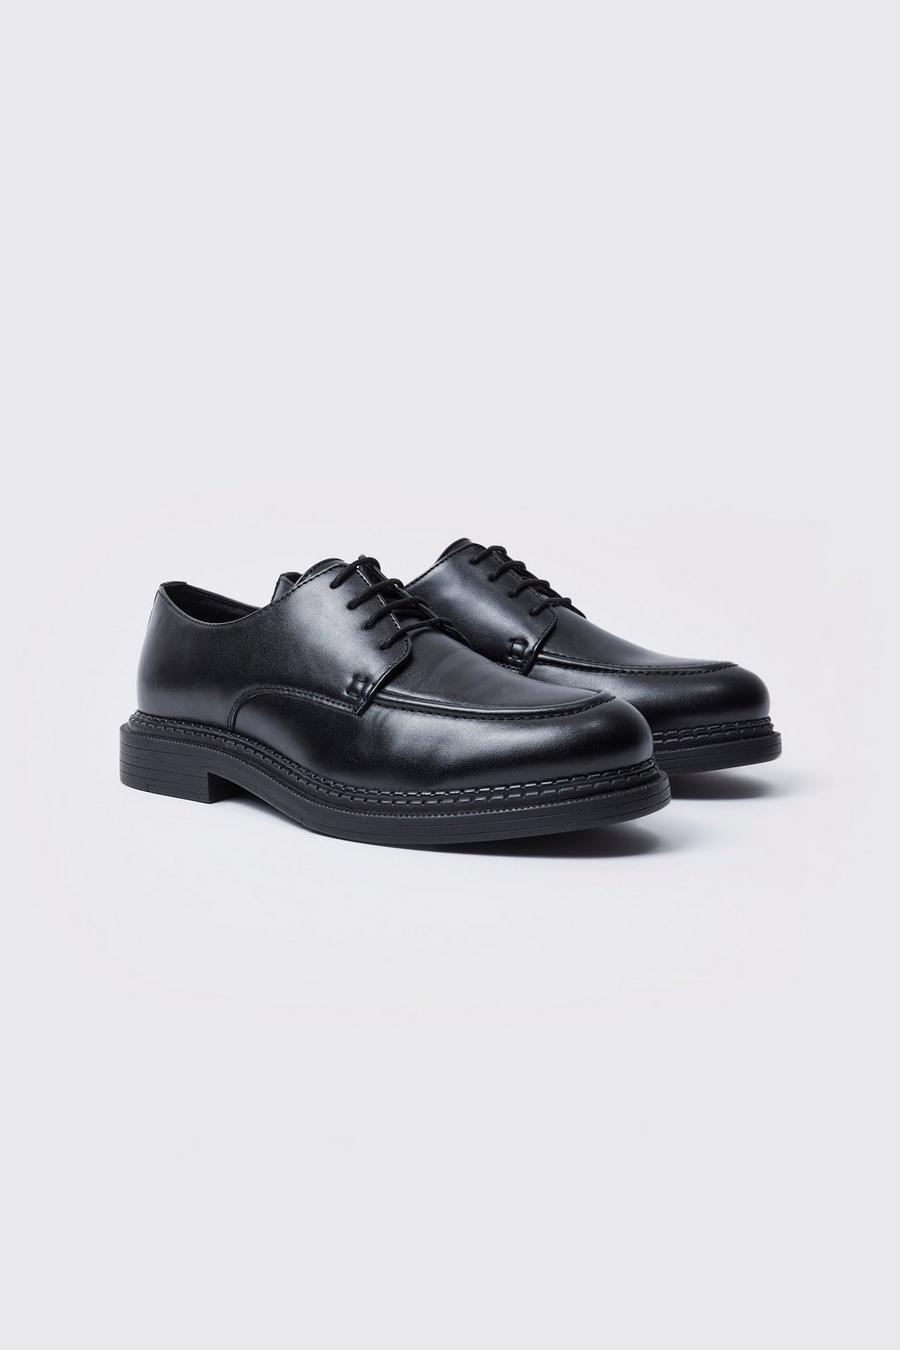 Chaussures habillées, Black